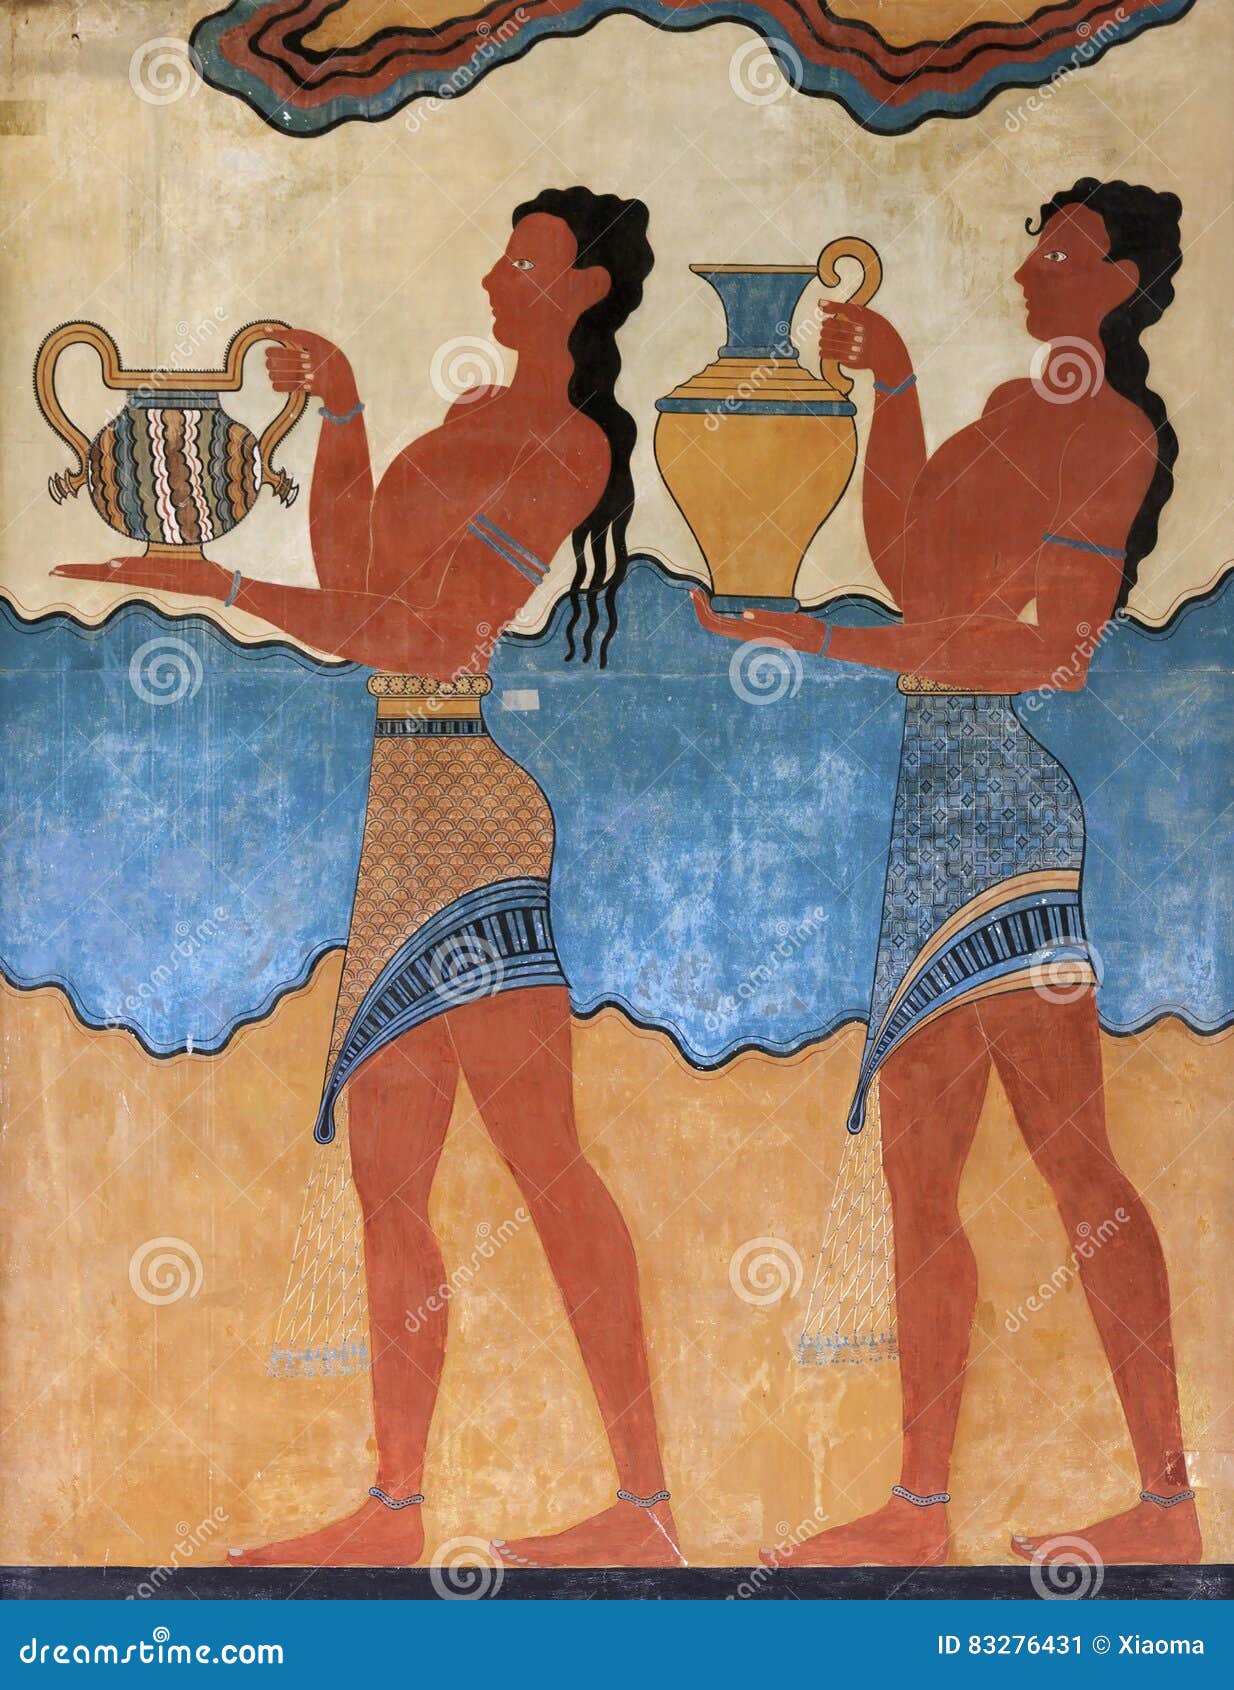 cup bearer fresco from knossos